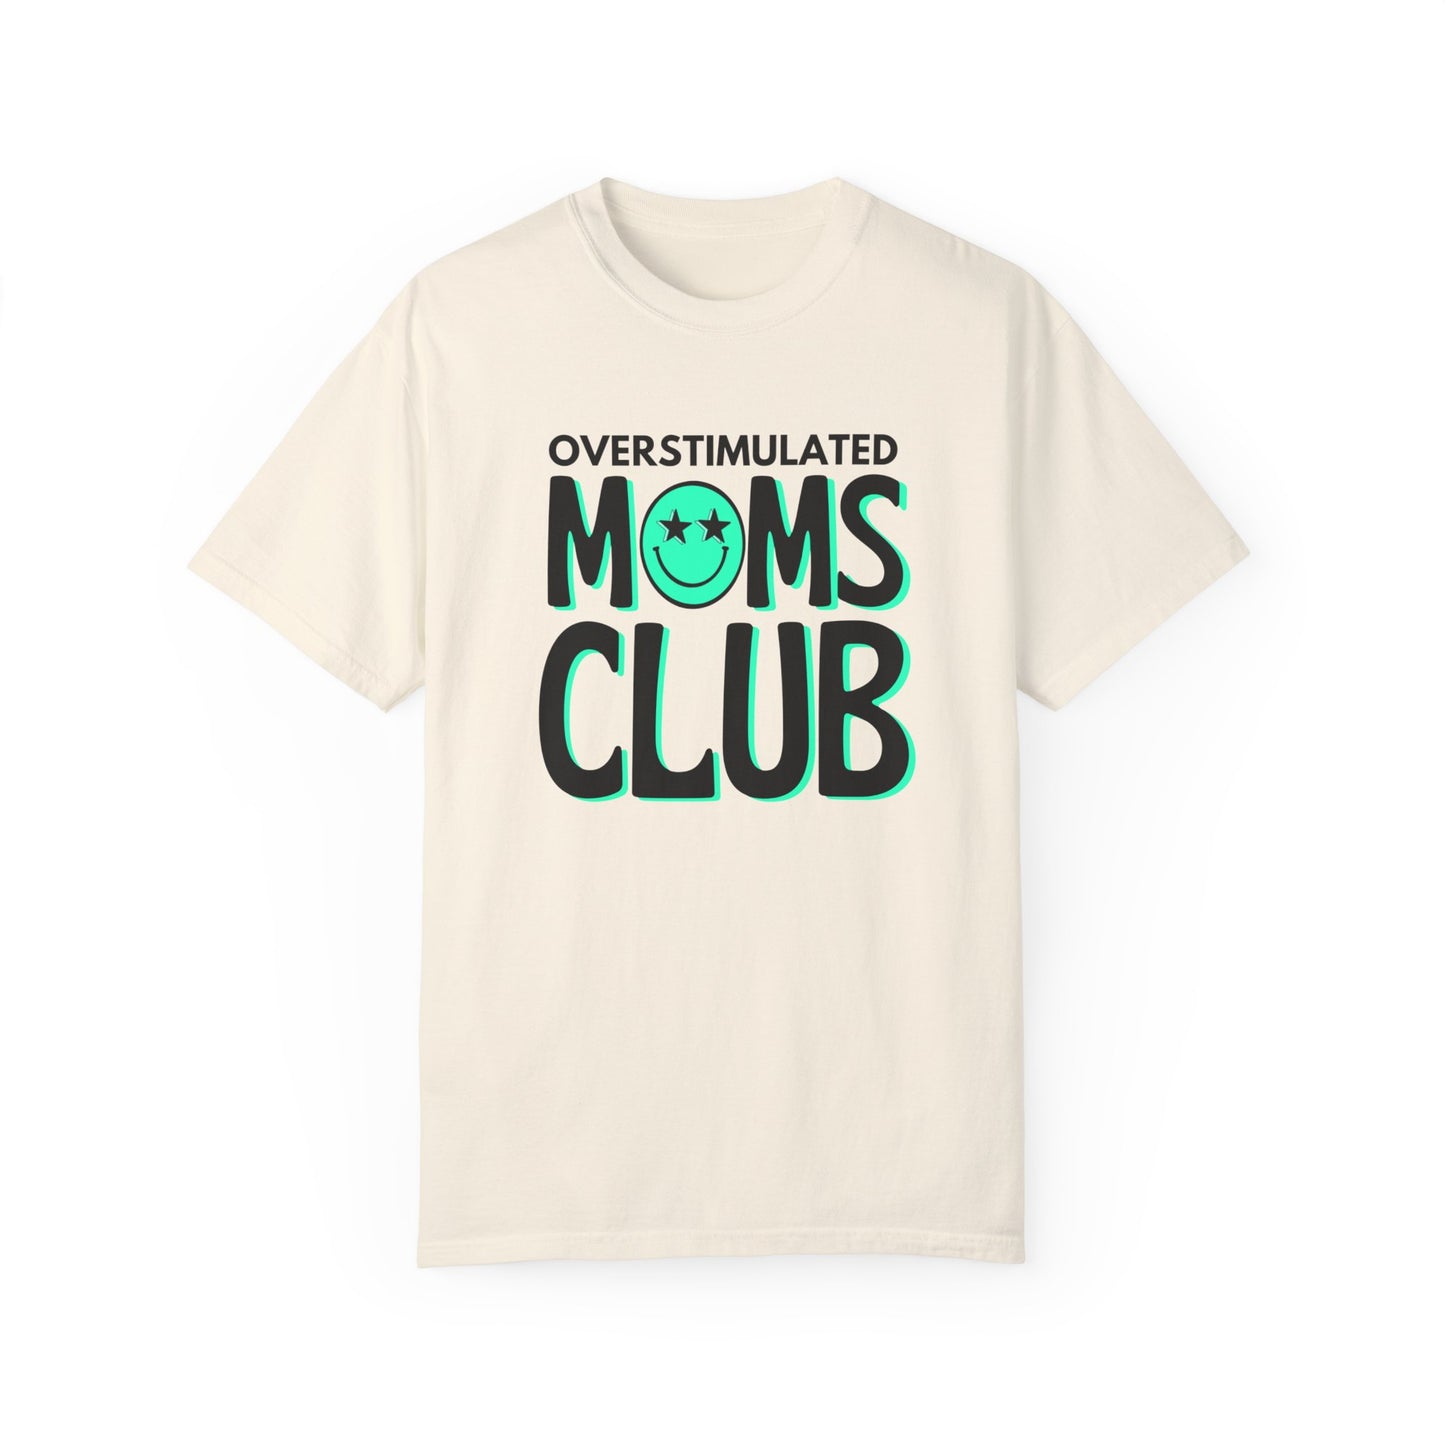 Overstimulated Moms Club Tee